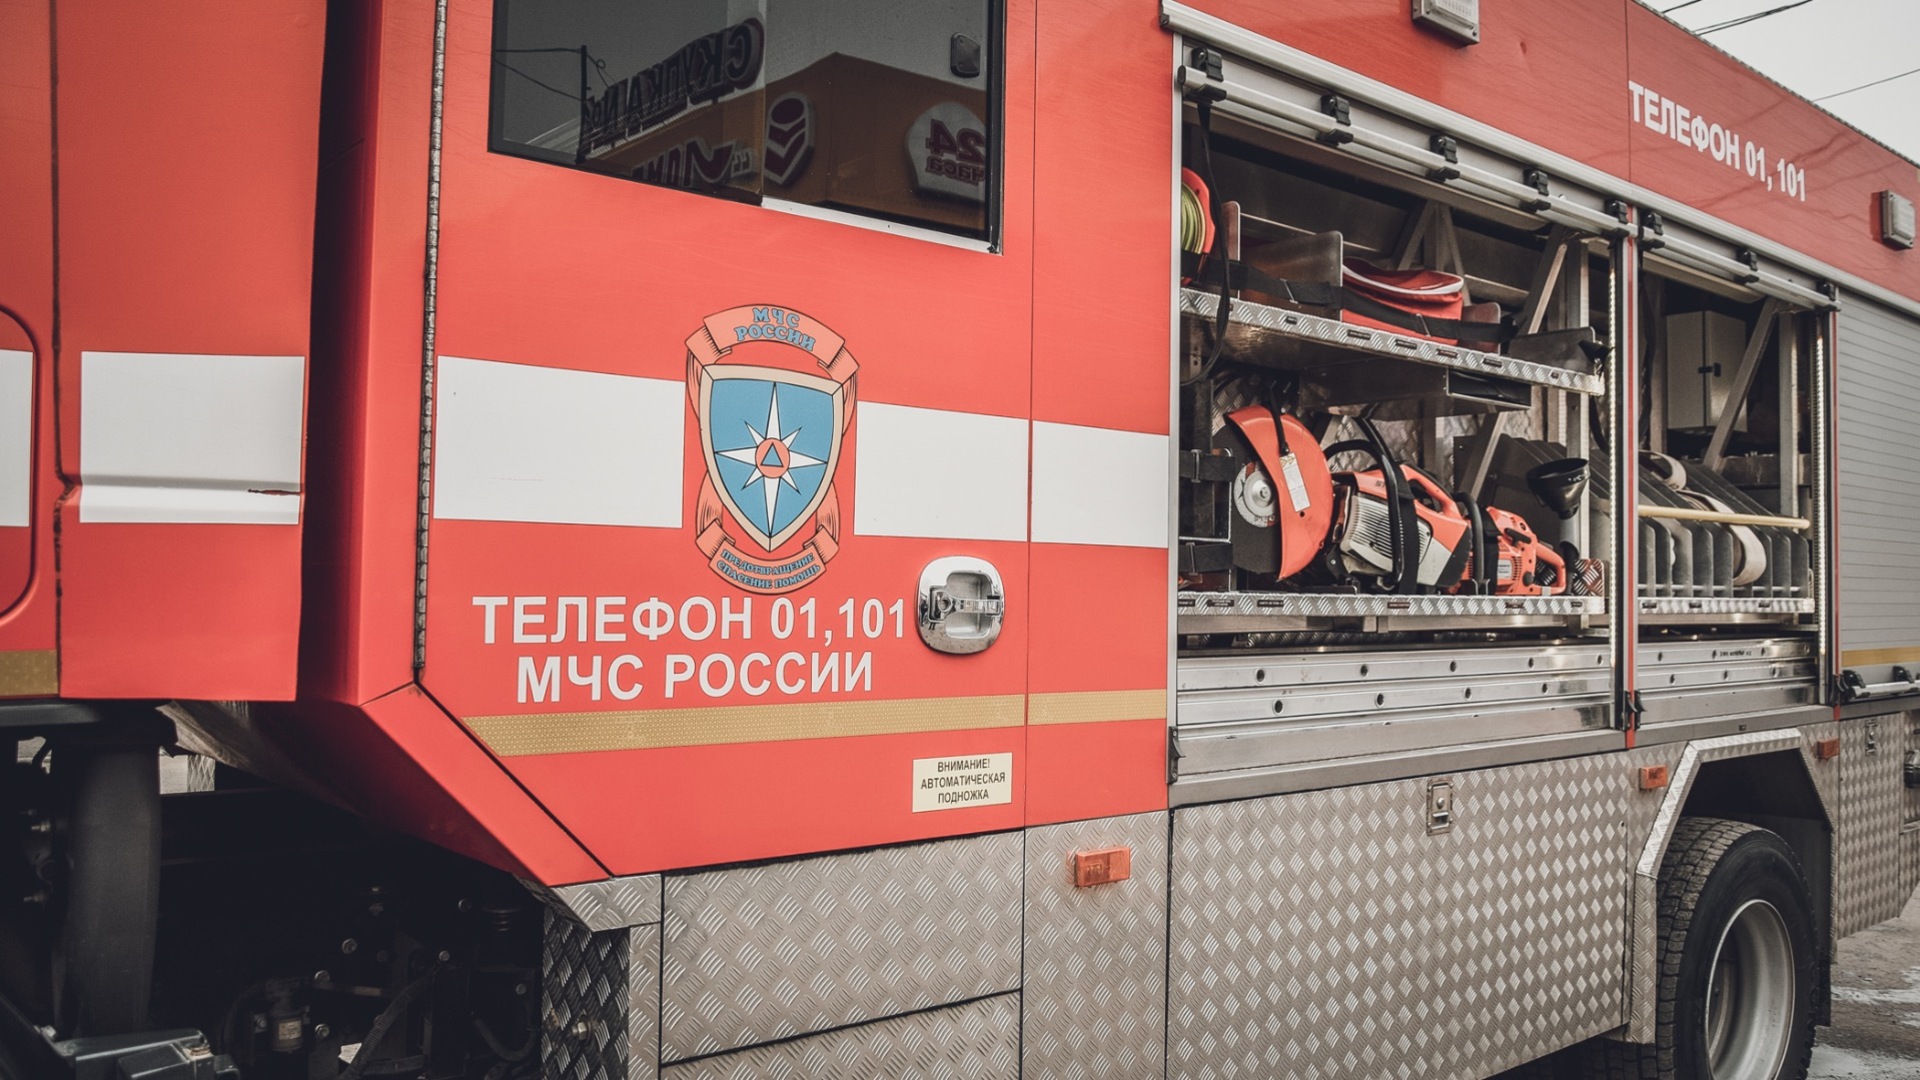 Административное здание вспыхнуло в районе АМЗ в Челябинске